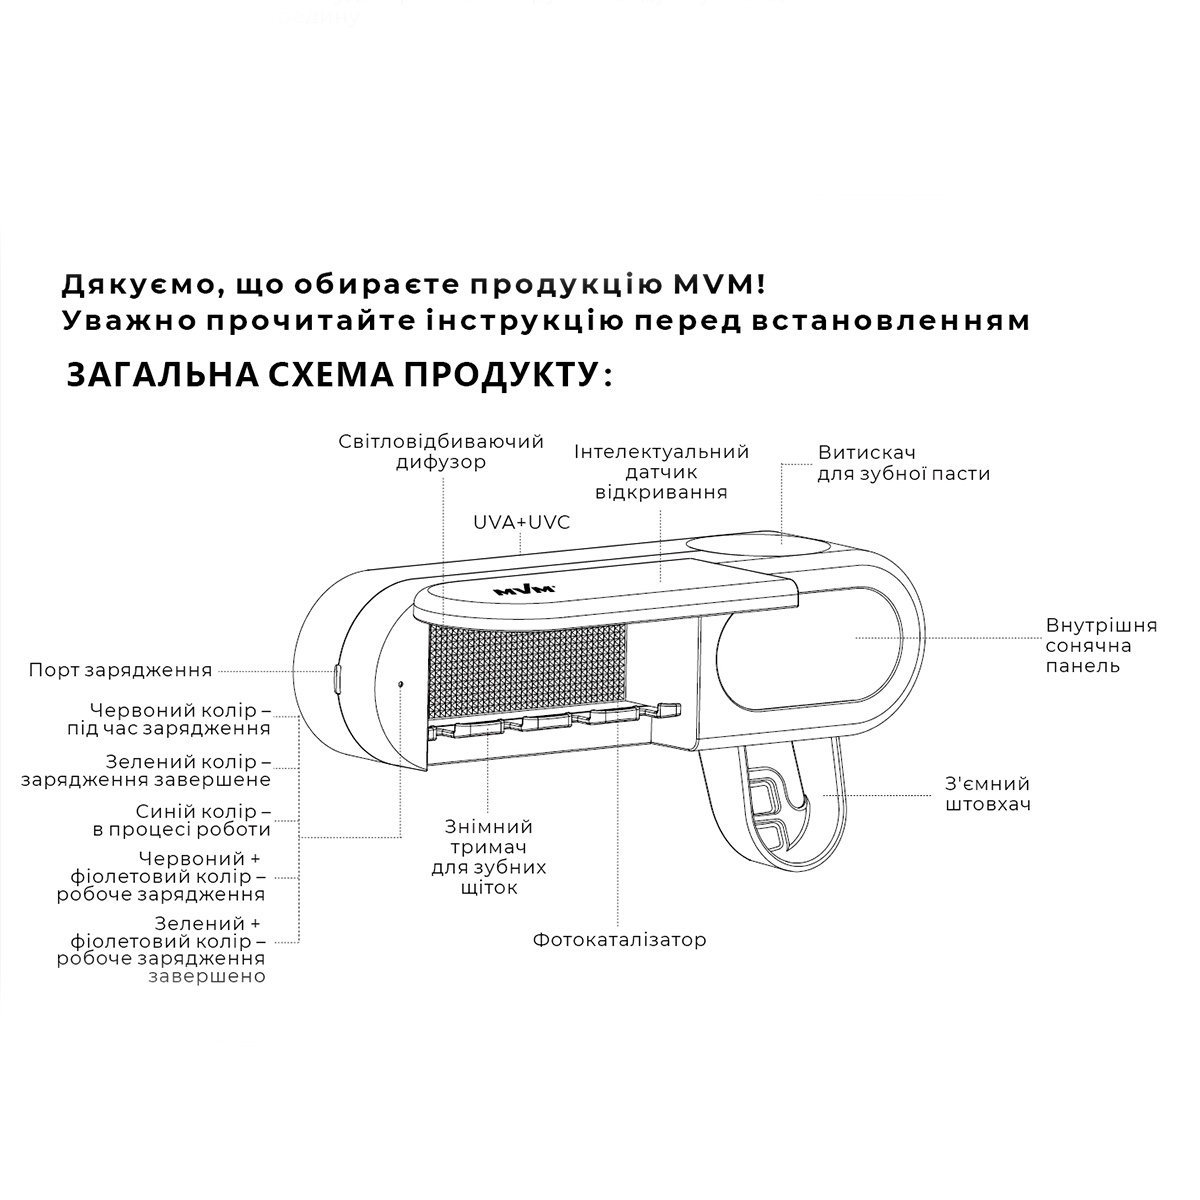 Органайзер для зубных щеток и пасты со стерилизатором MVM USB-порт округлый пластиковый белый BP-36 WHITE